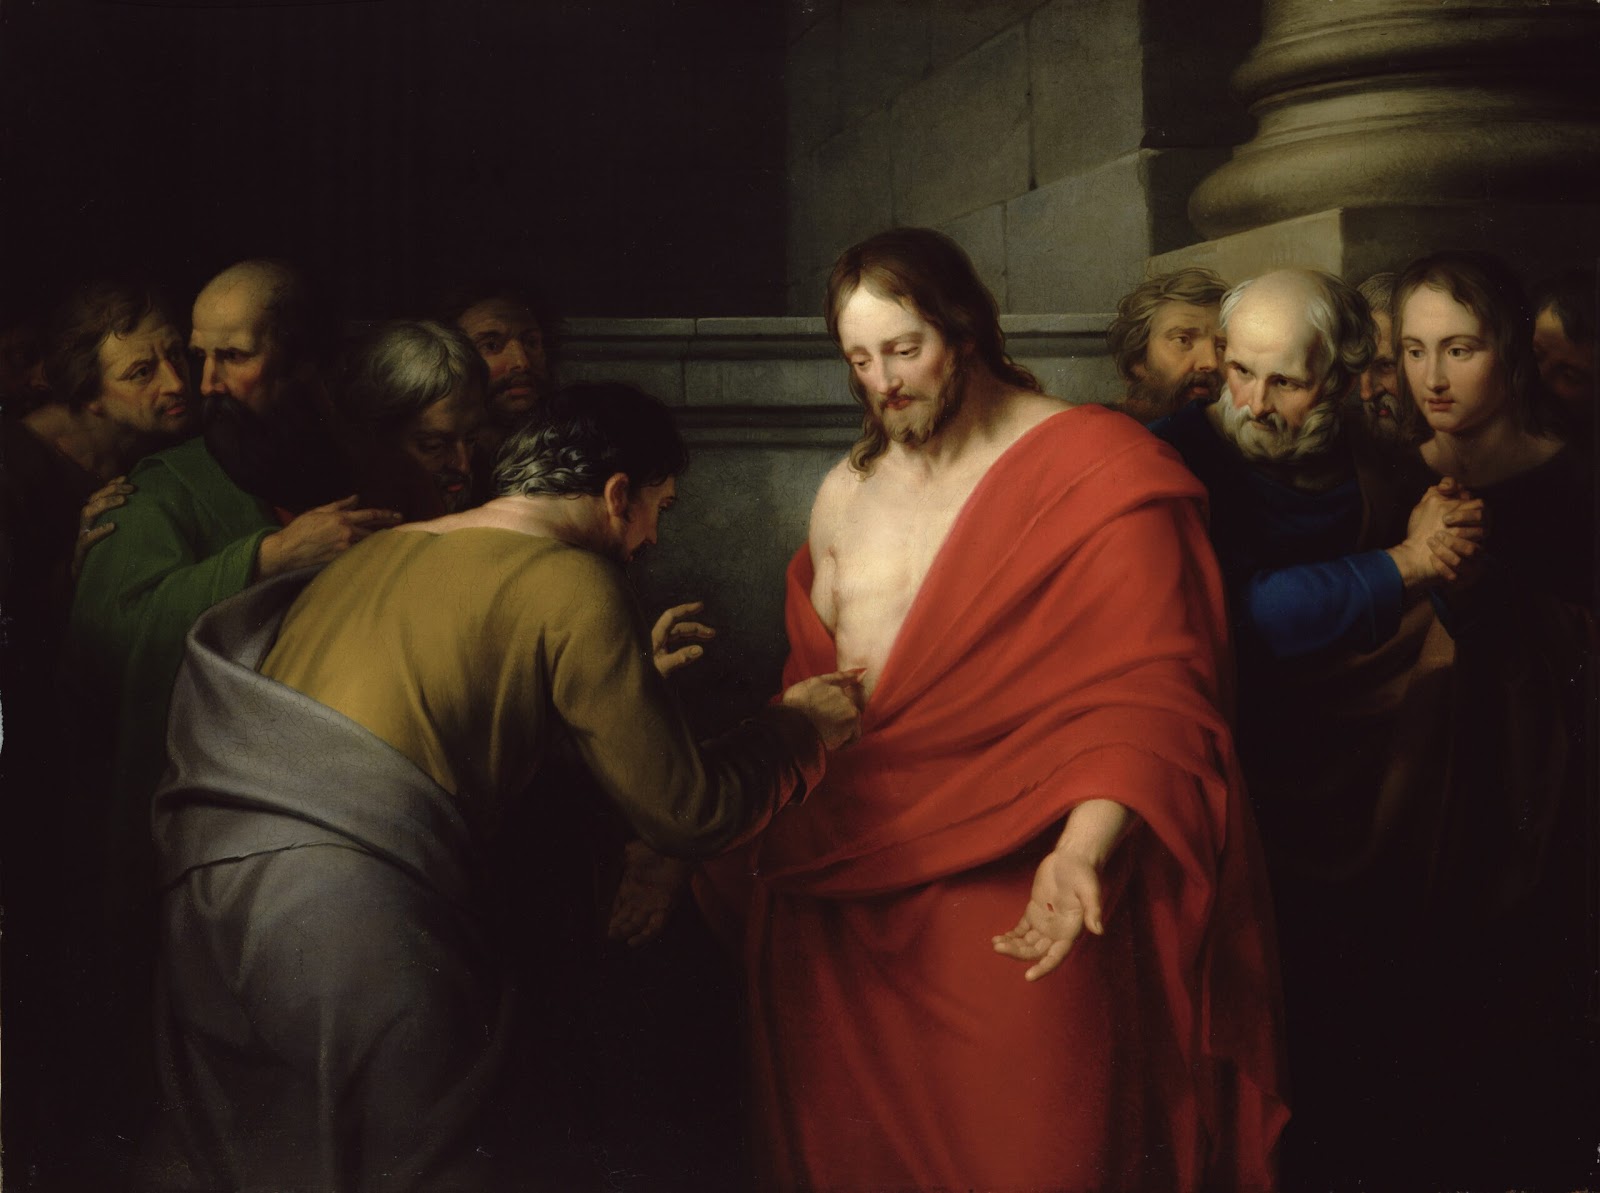 Jesus-back-painting-живопись-иисус-воскрес-фома-неверующий-красная-мантия-рана-христос-апостолы-5228×38981